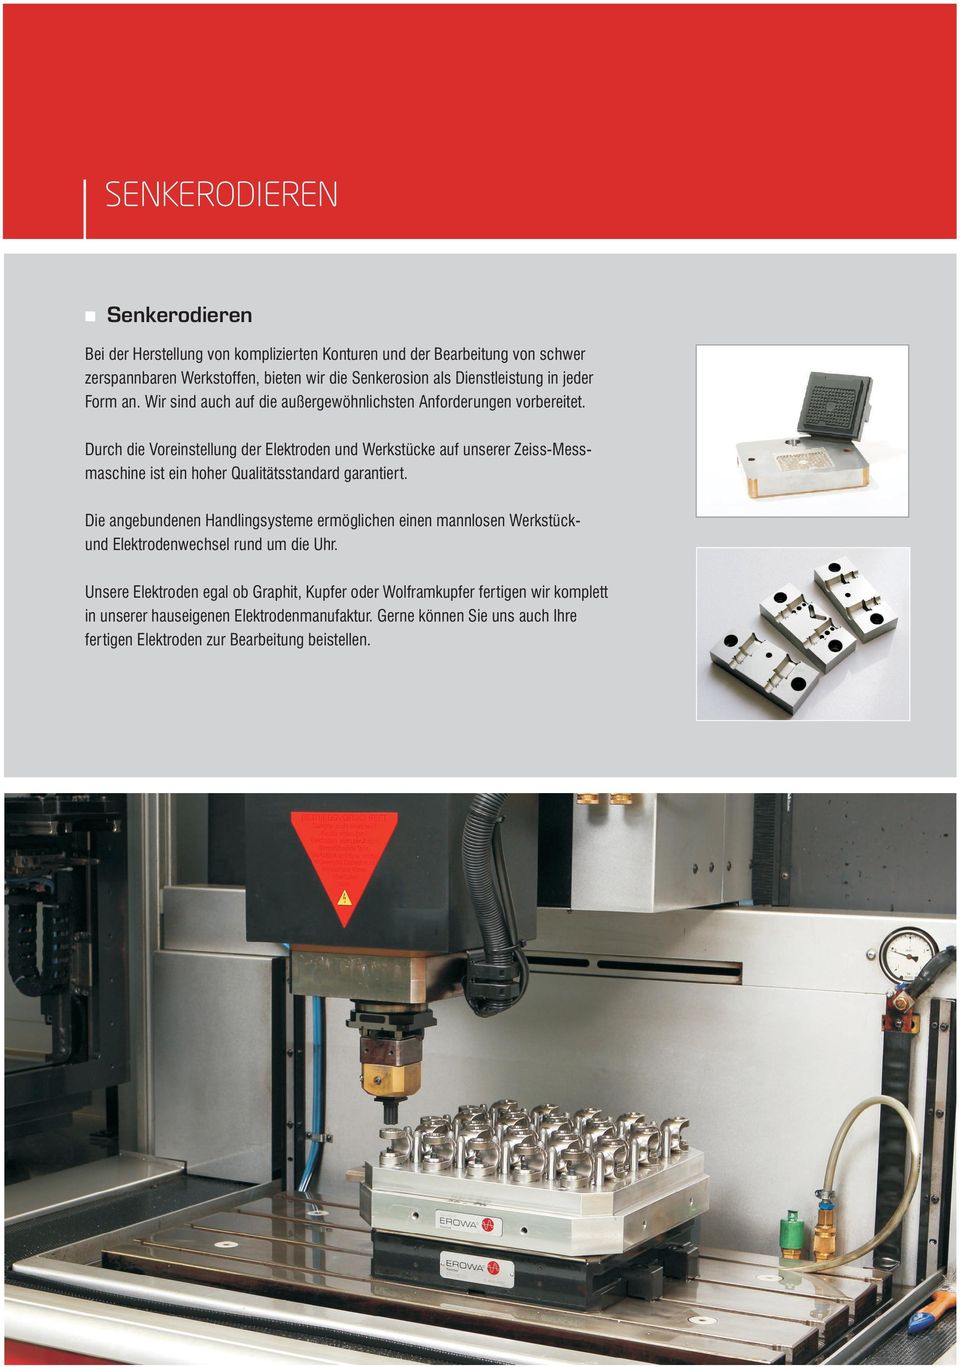 Durch die Voreinstellung der Elektroden und Werkstücke auf unserer Zeiss-Messmaschine ist ein hoher Qualitätsstandard garantiert.